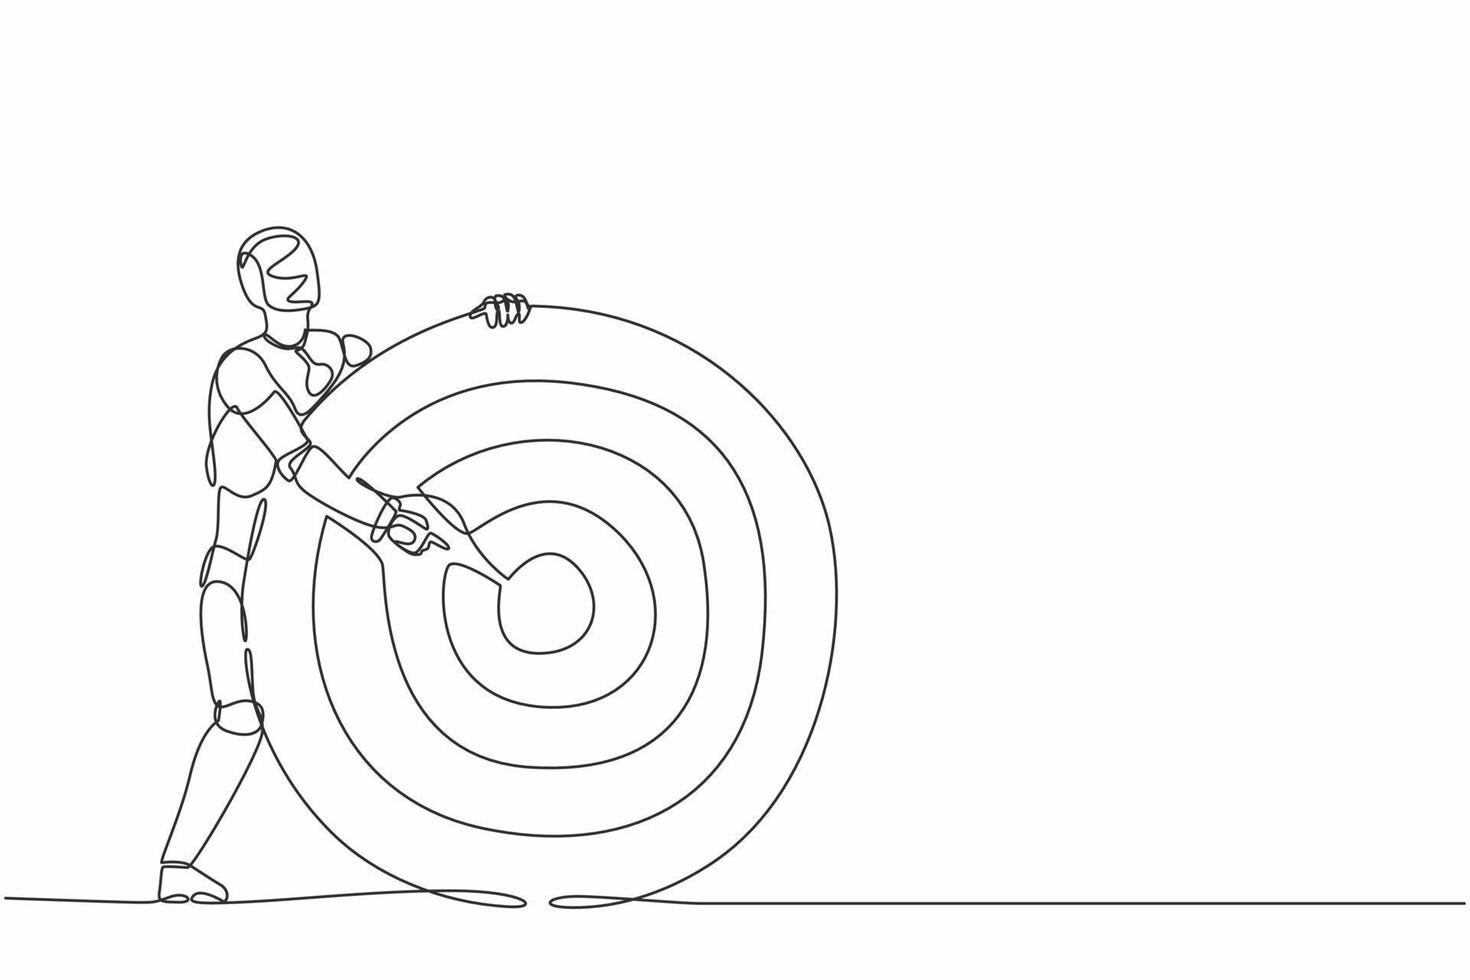 ein Strichzeichnungsroboter, der Bogenschützenziel oder Dartscheibe hält und auf Bullseye zeigt. Zukunfts-Technologie. künstliche Intelligenz und maschinelles Lernen. durchgehende Liniendesign-Vektorillustration vektor